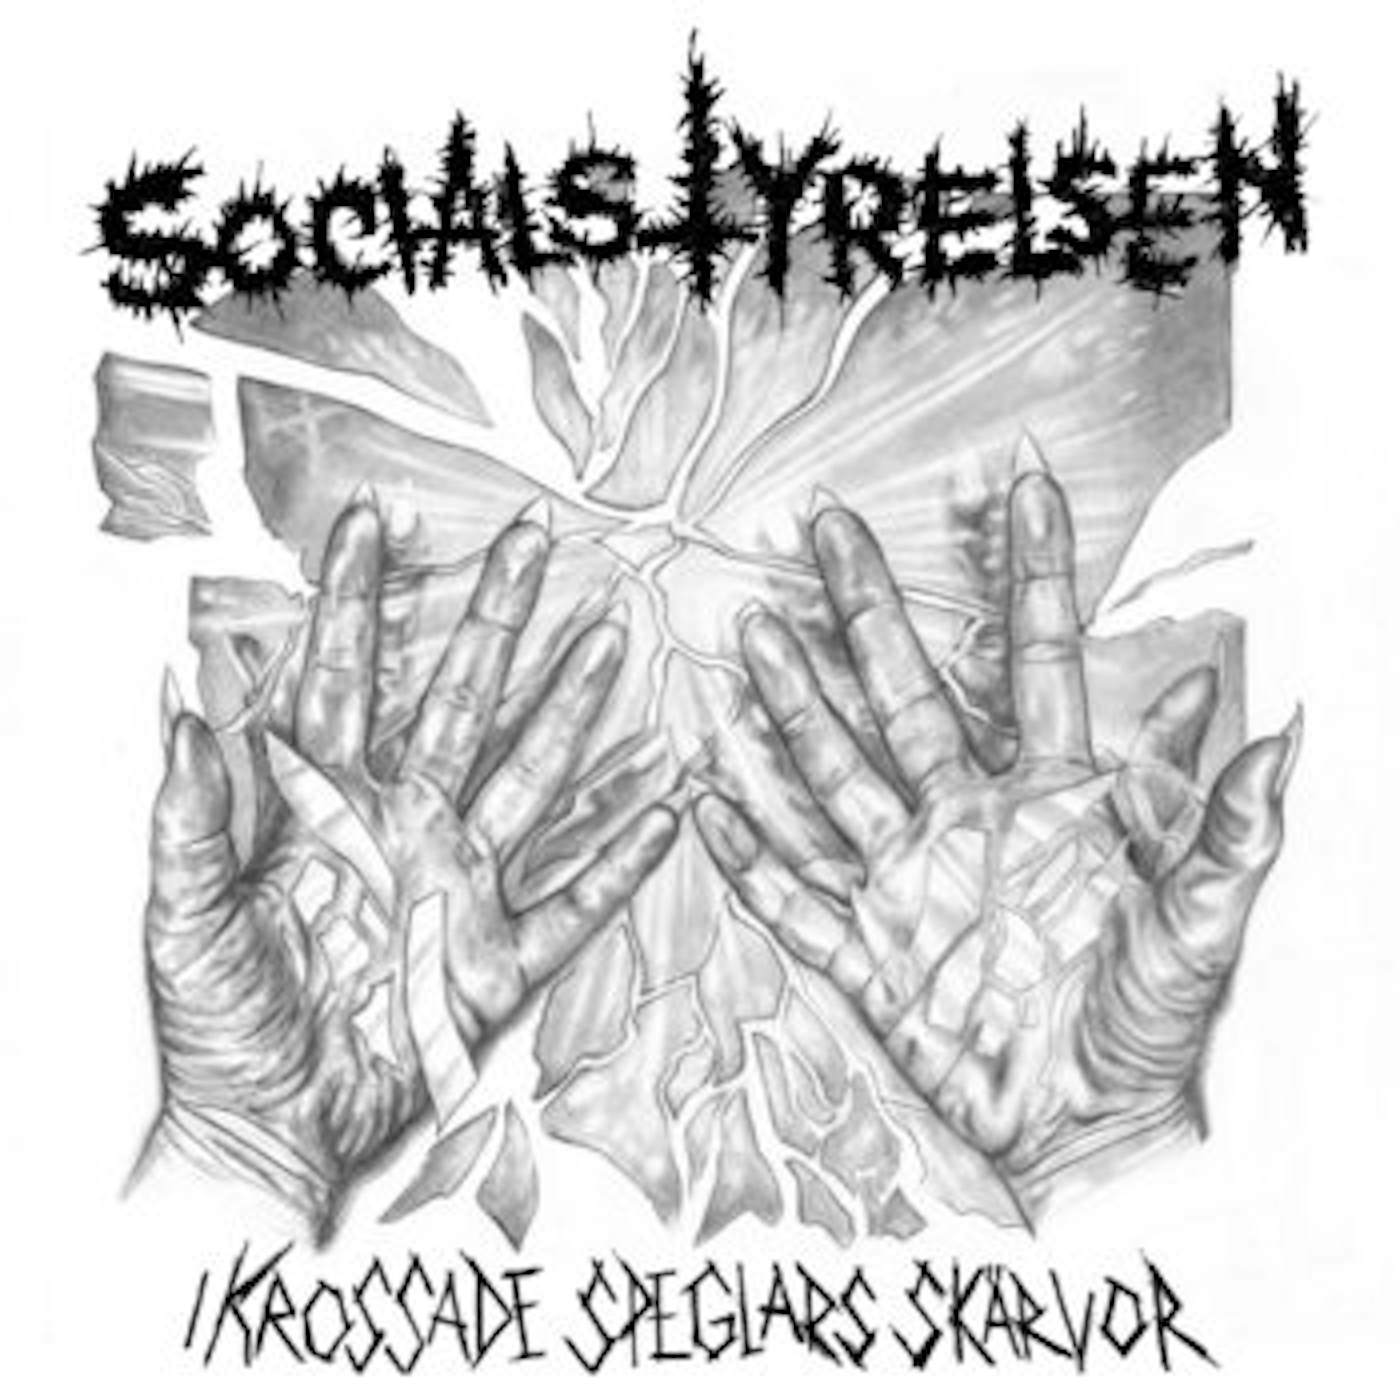 Socialstyrelsen I KROSSADE SPEGLARS SKARVOR Vinyl Record